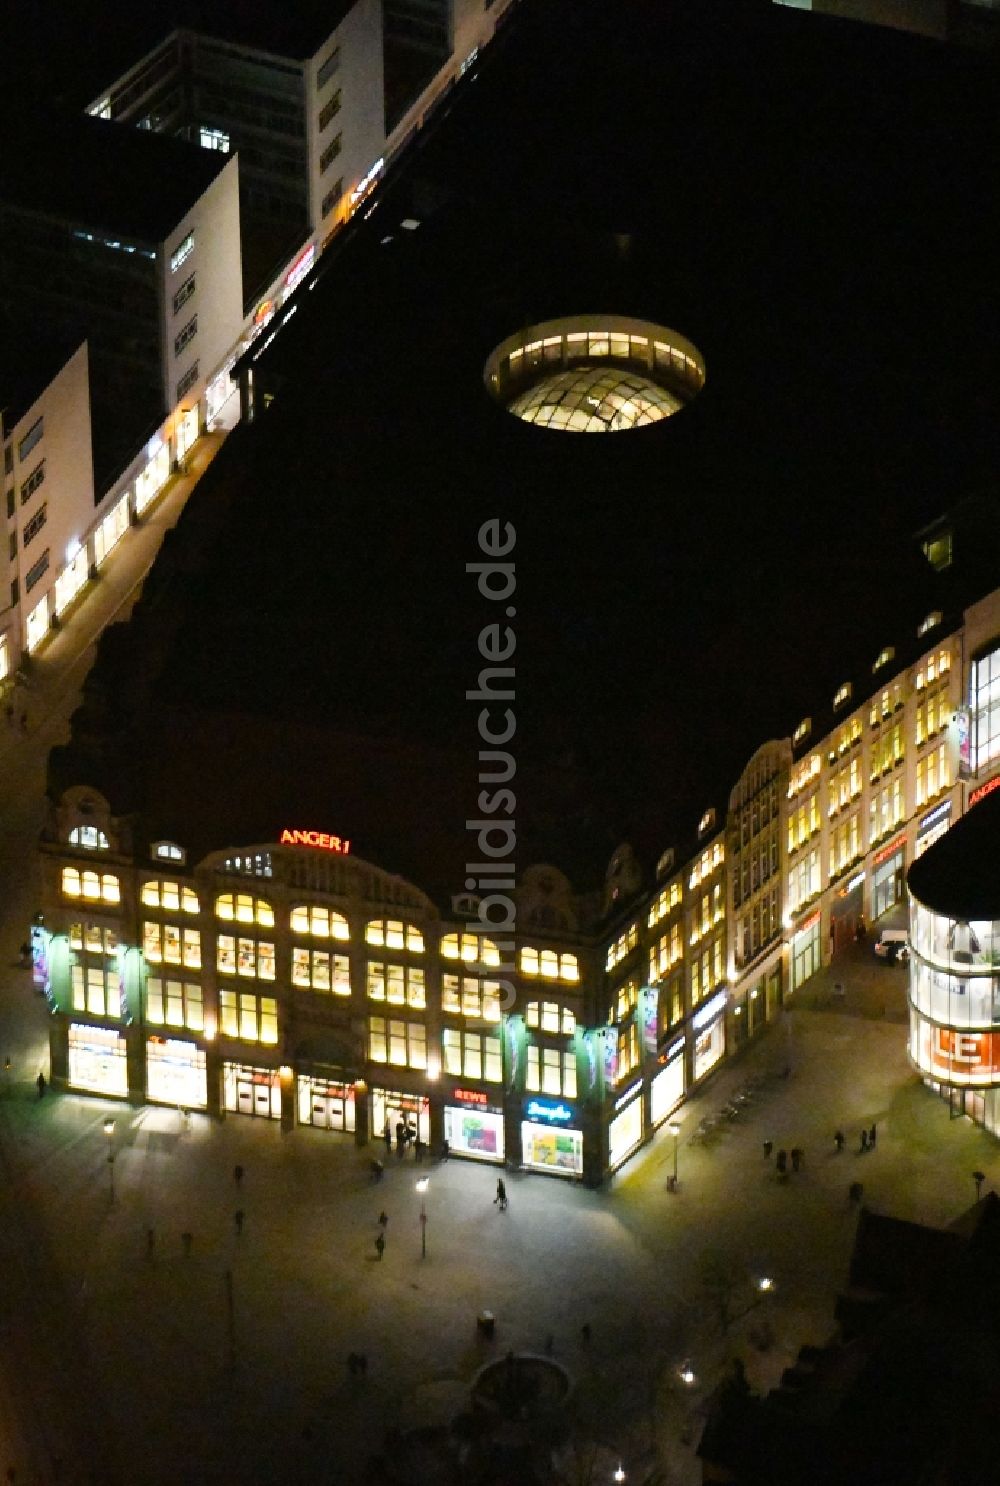 Erfurt bei Nacht von oben - Nachtluftbild des Einkaufszentrum Anger 1 am Anger in Erfurt im Bundesland Thüringen